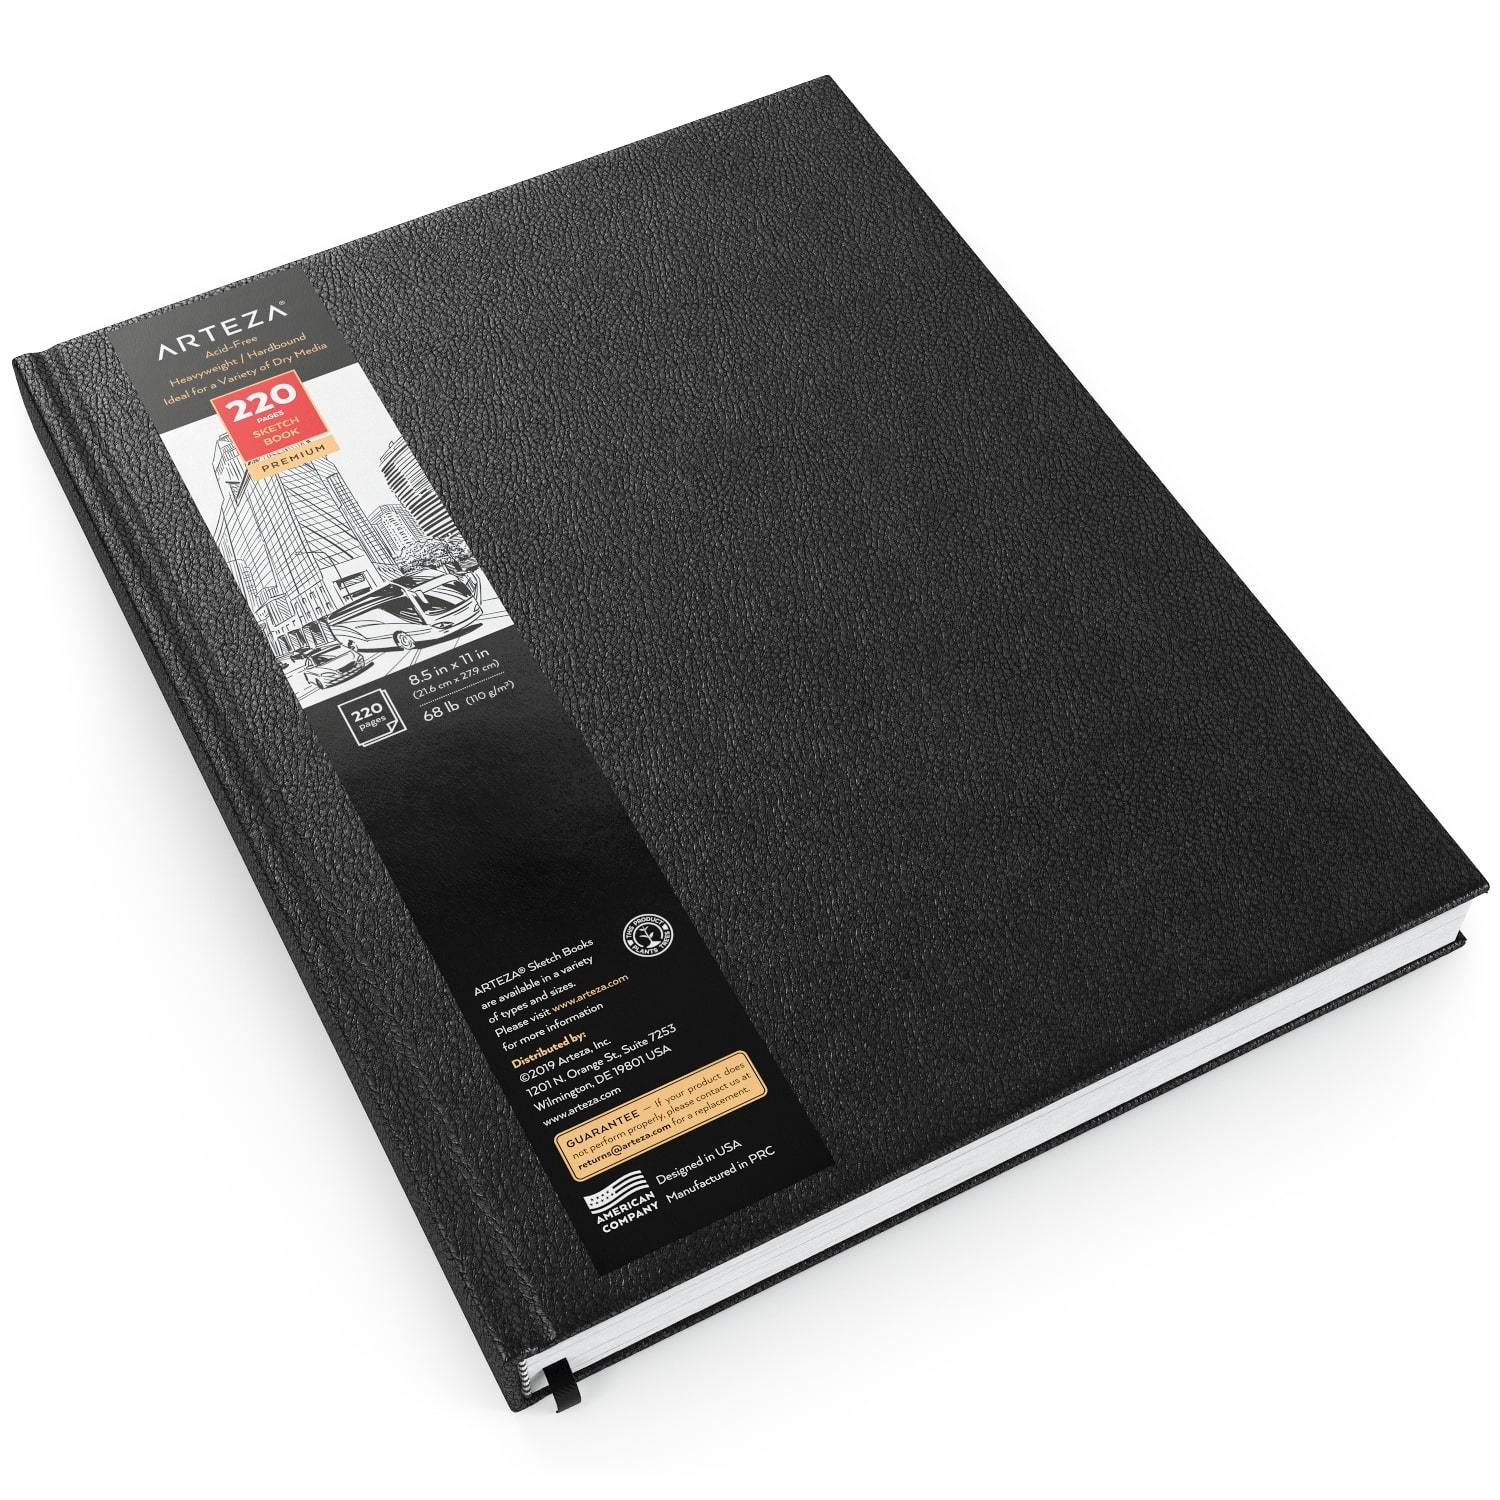 MICA Sketchbook Hard Bound 9X12 - MICA Store